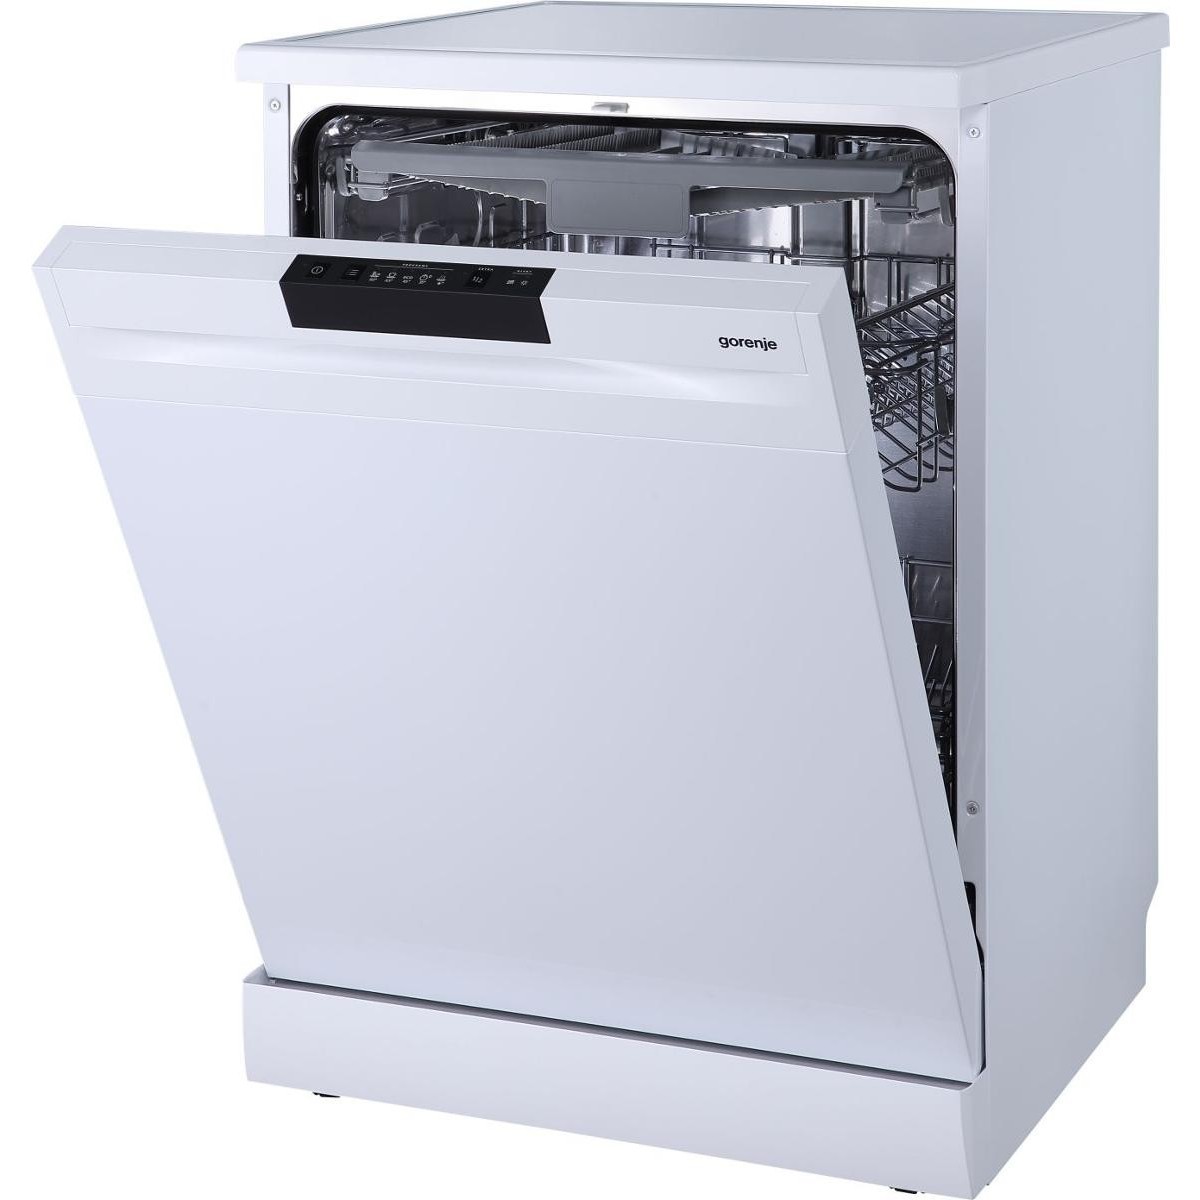 Посудомоечная машина горенье отдельностоящая. Посудомоечная машина Gorenje gs531e10w. Посудомоечная машина Gorenje gs53110w. Посудомоечная машина Gorenje gs53010w. Посудомоечная машина Gorenje gs541d10w.